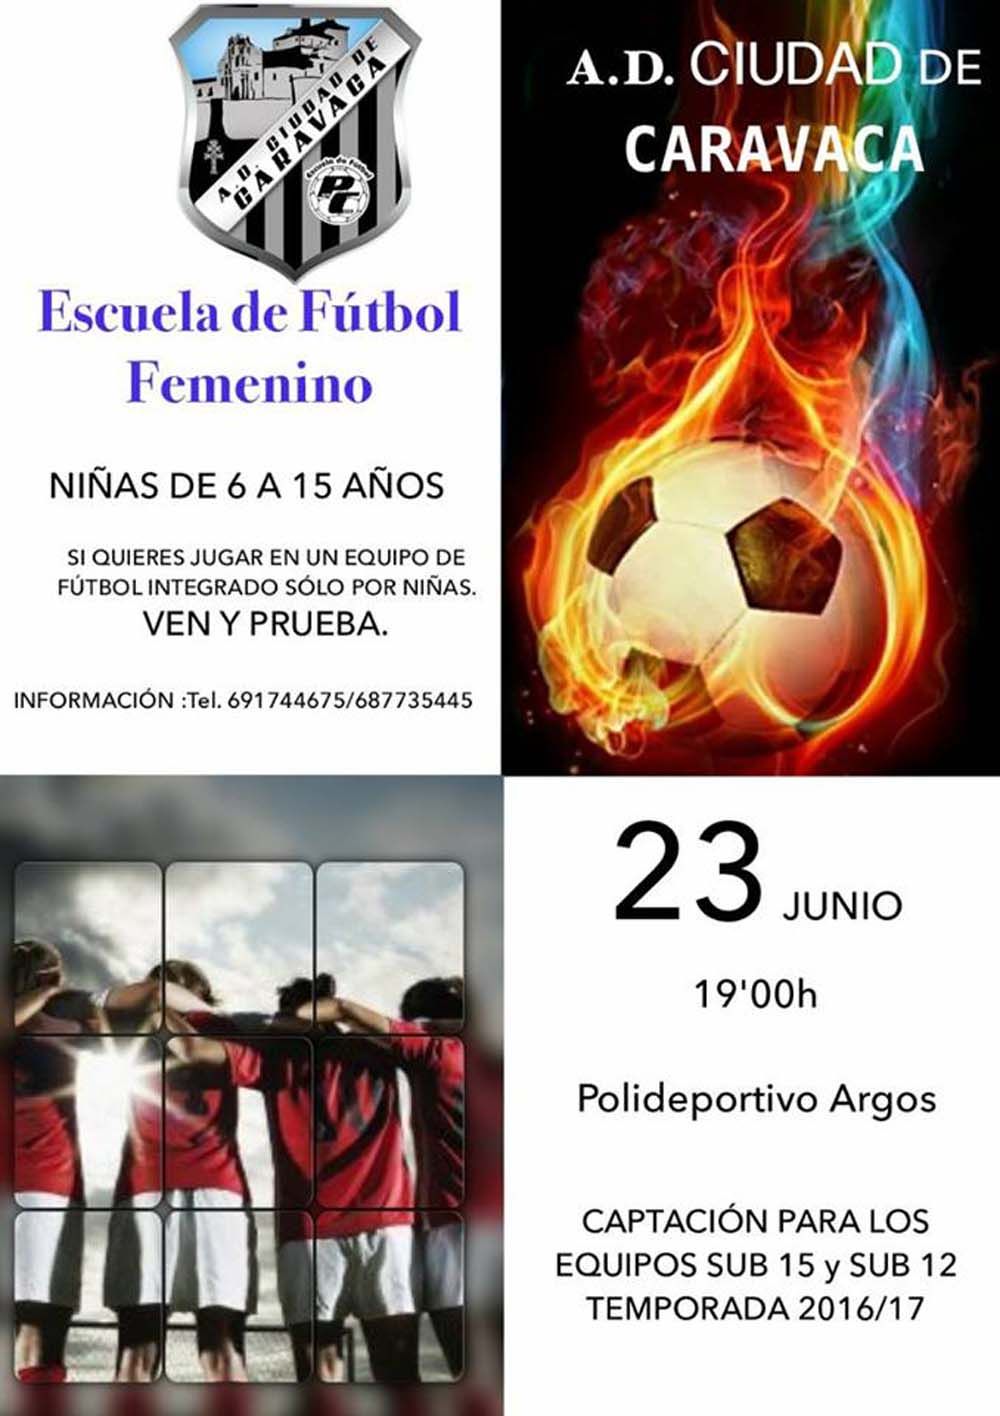 Campaña de captación de futbolistas de A.D. Ciudad de Caravaca-Paco